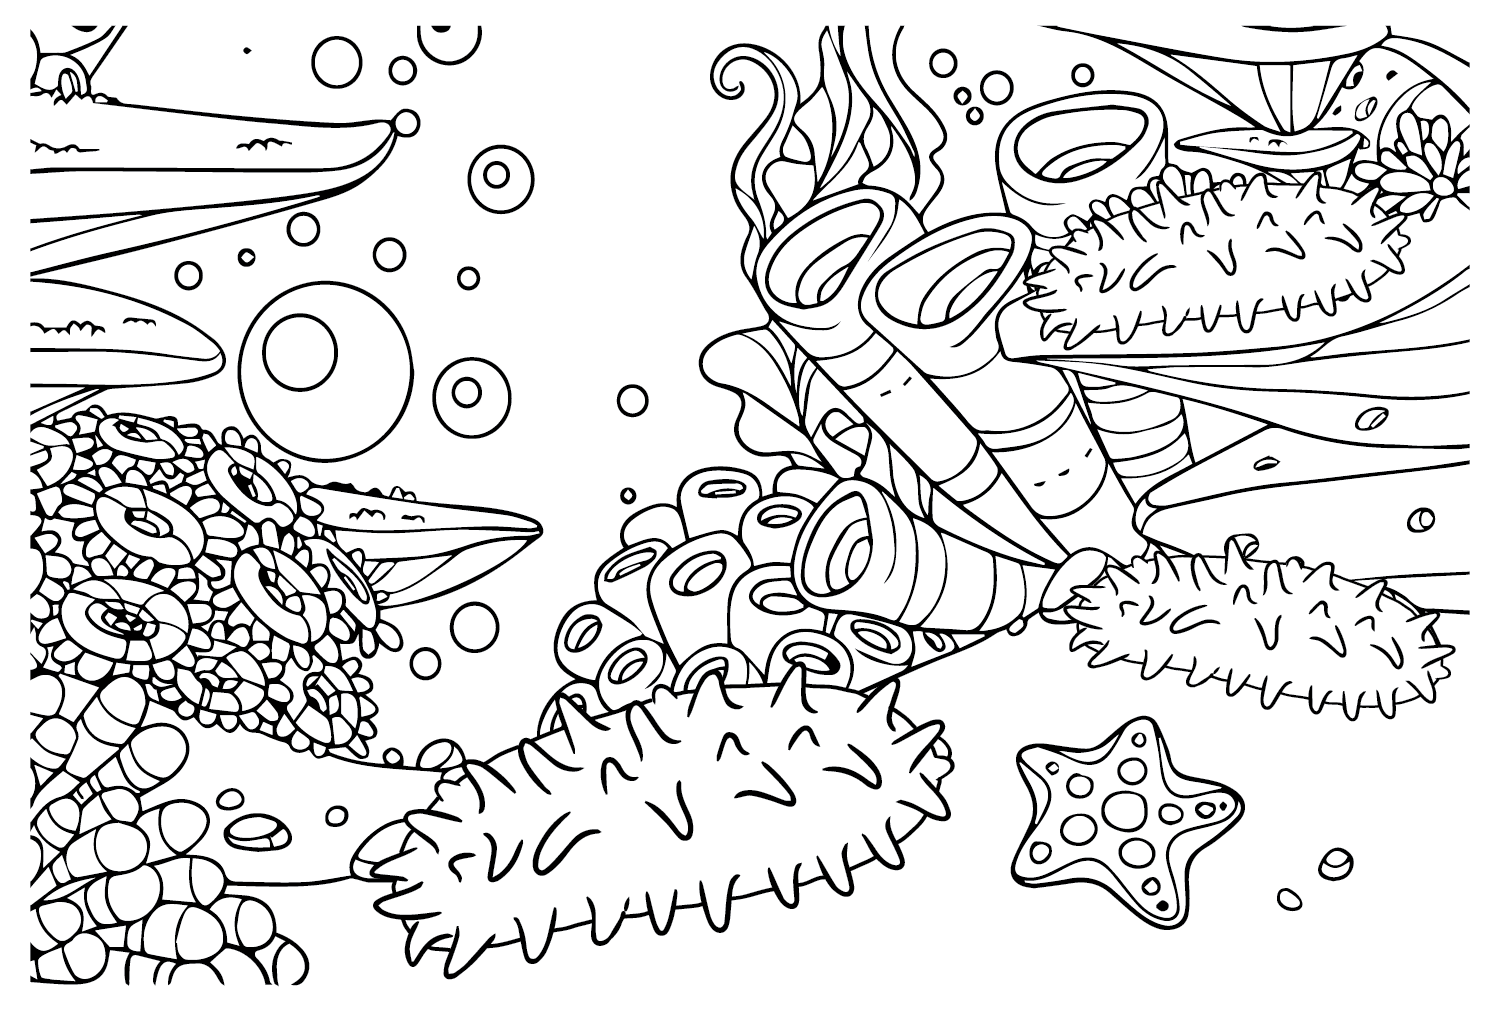 Pepino de mar y estrella de mar, coral de pepino de mar